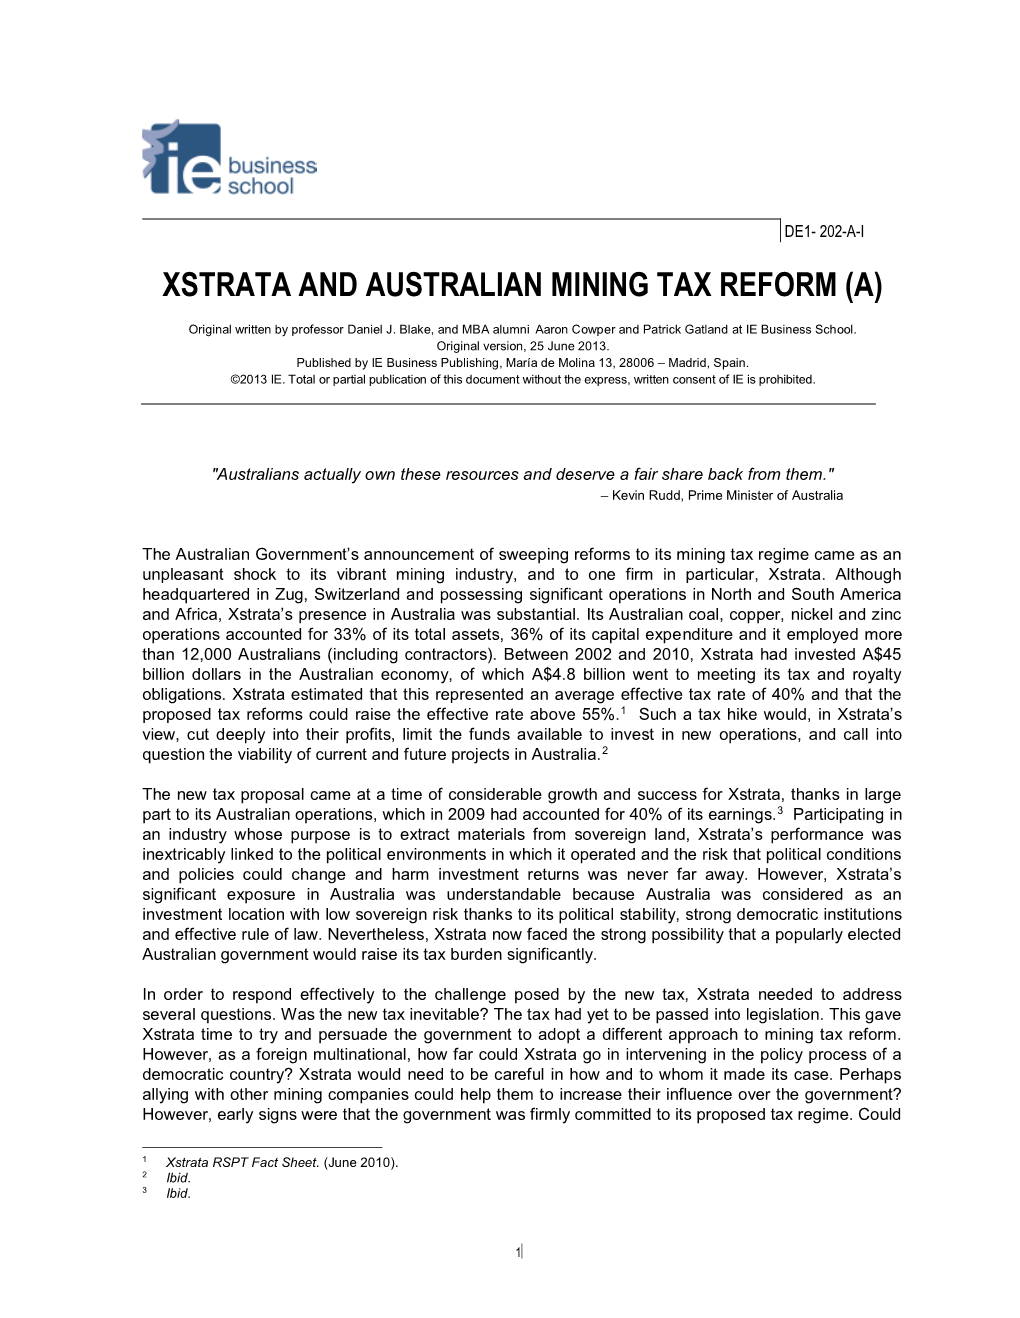 Xstrata and Australian Mining Tax Reform (A)